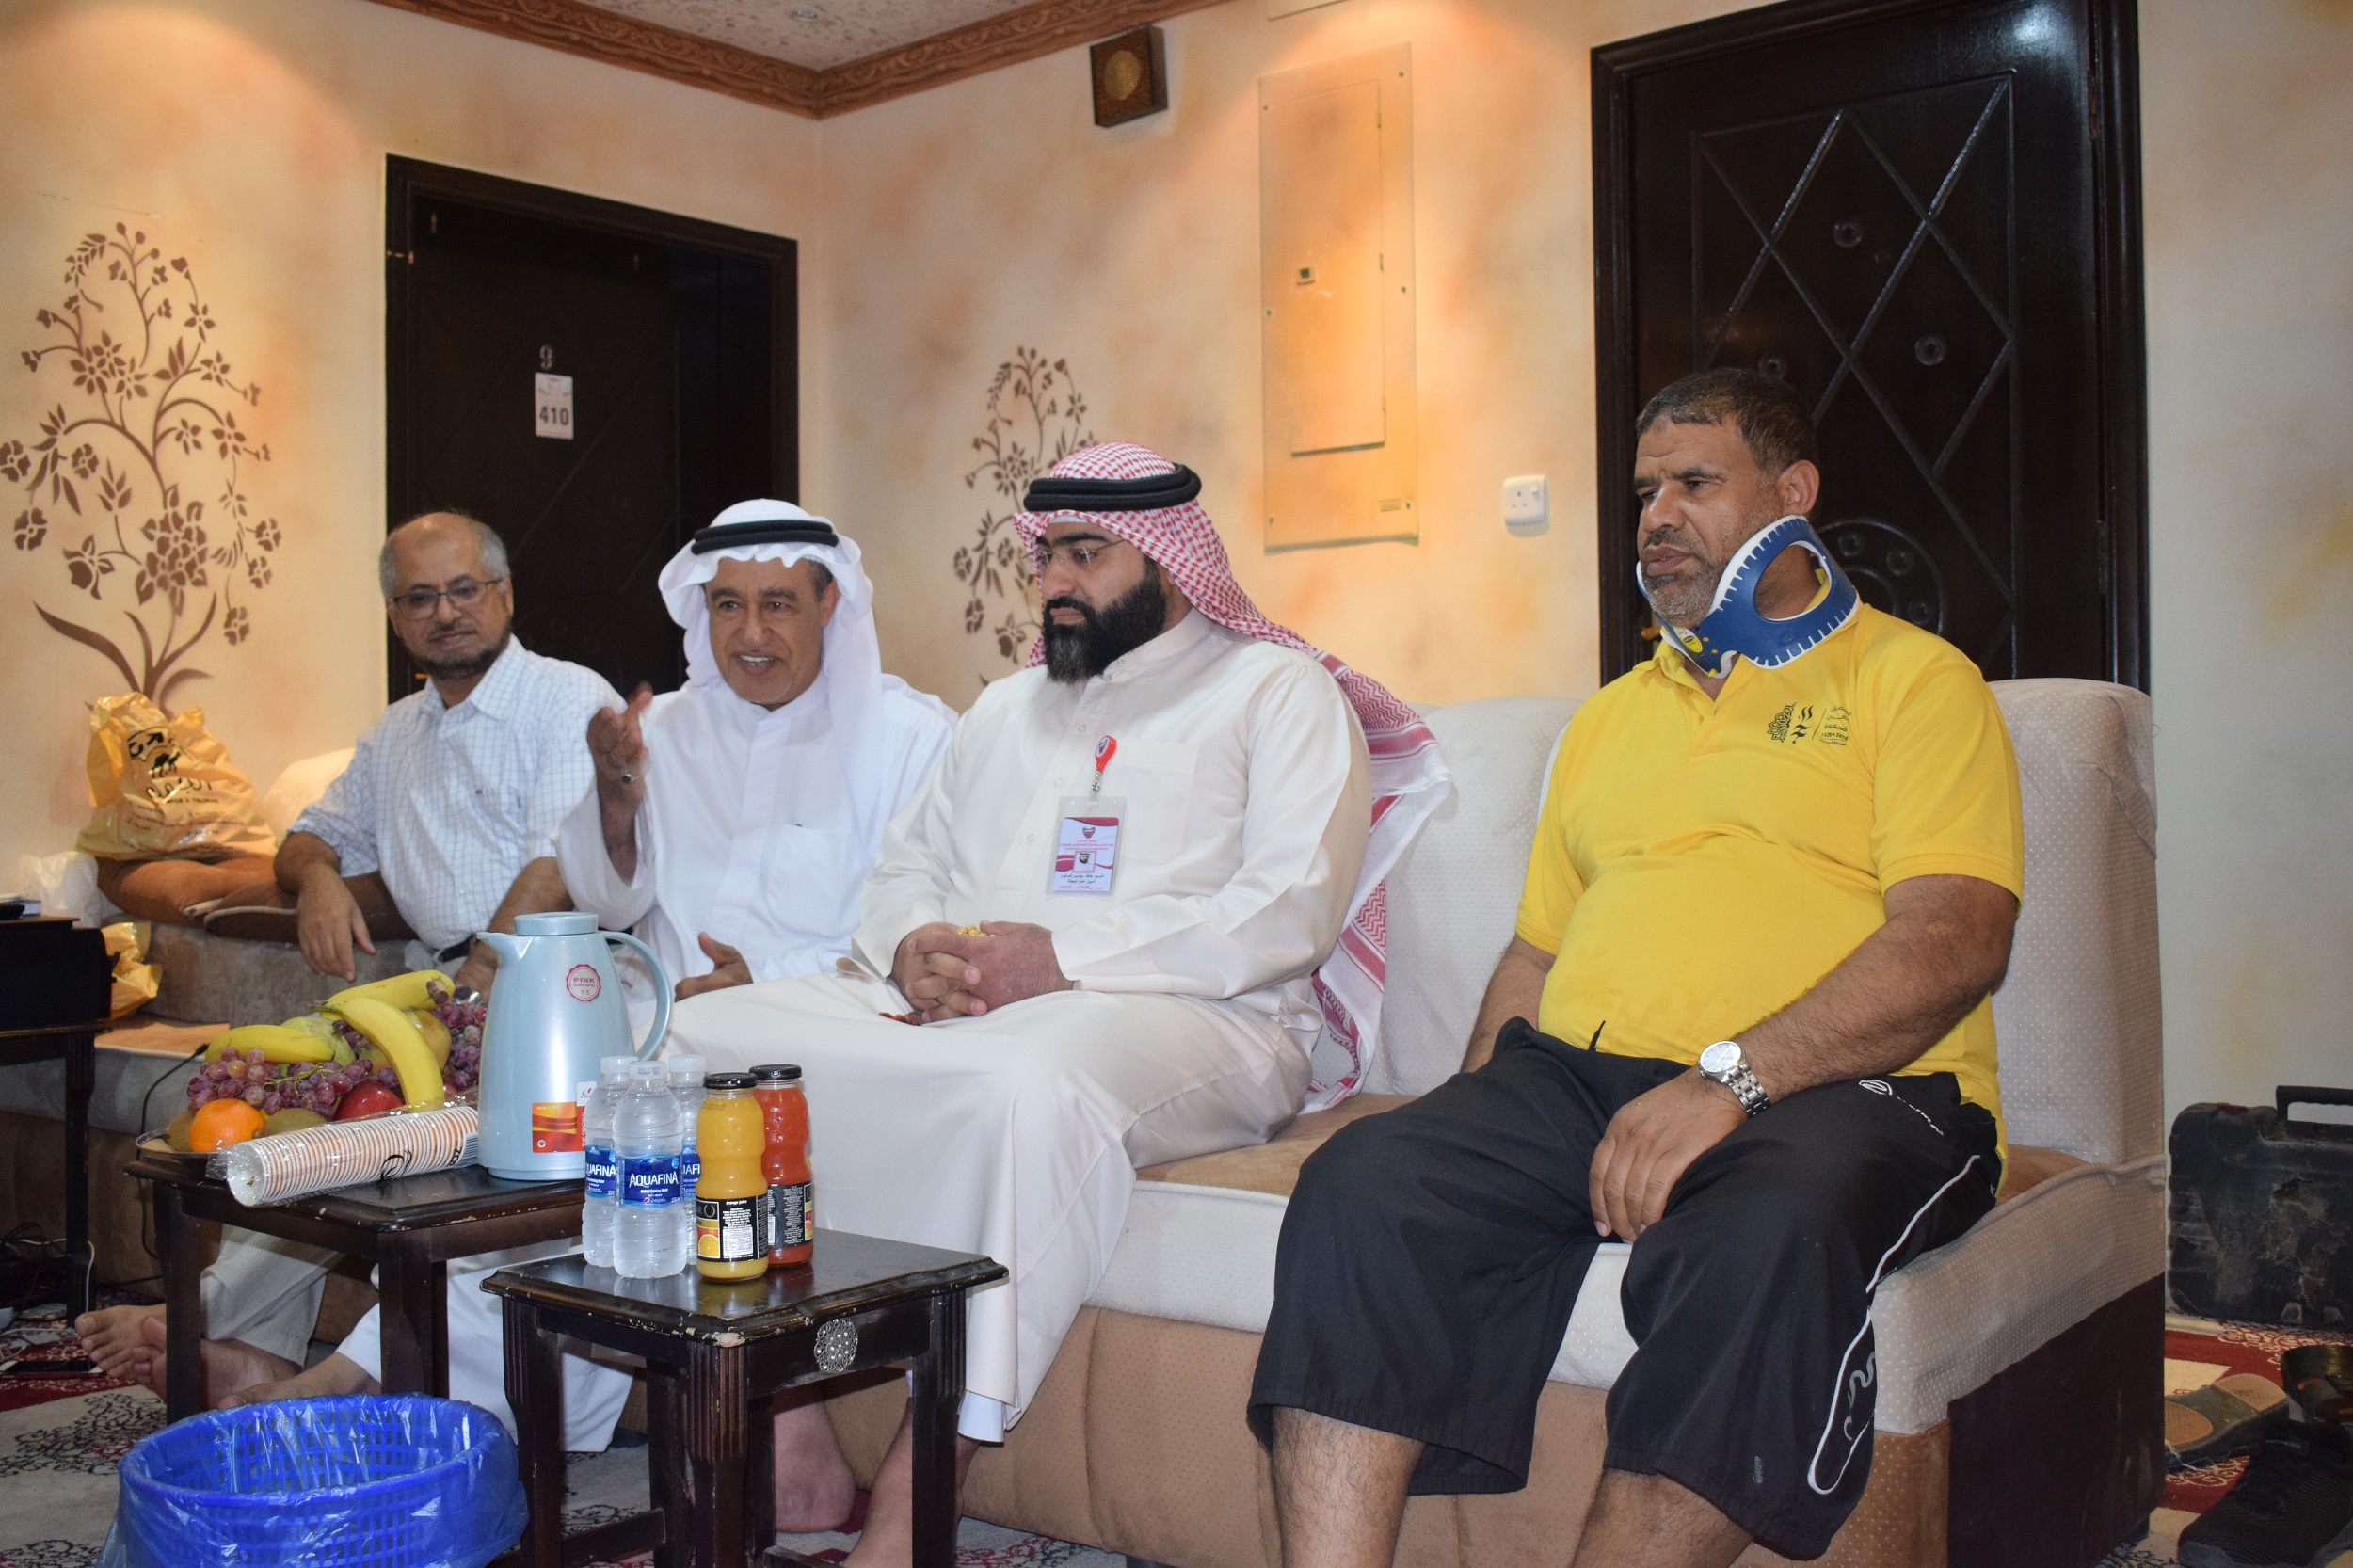 وفد بعثة مملكة البحرين للحج يقوم بزيارة تفقدية لكل من حملة "المواسم" و"المحفوظ"  للاطمئنان على الحالة الصحية لمريضين